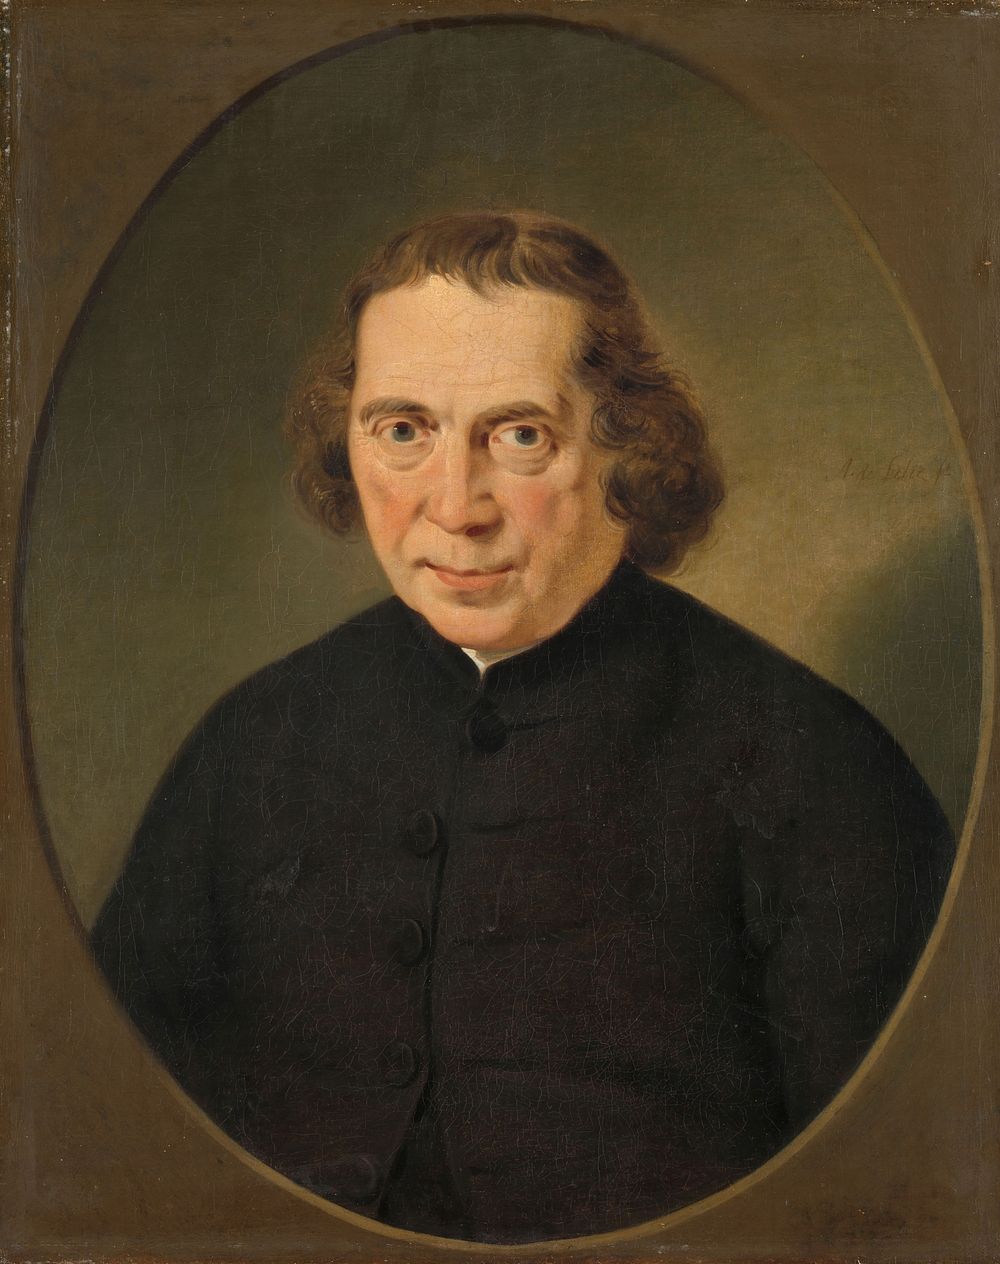 Portrait of Jan Nieuwenhuyzen (1780 - 1806) by Adriaan de Lelie